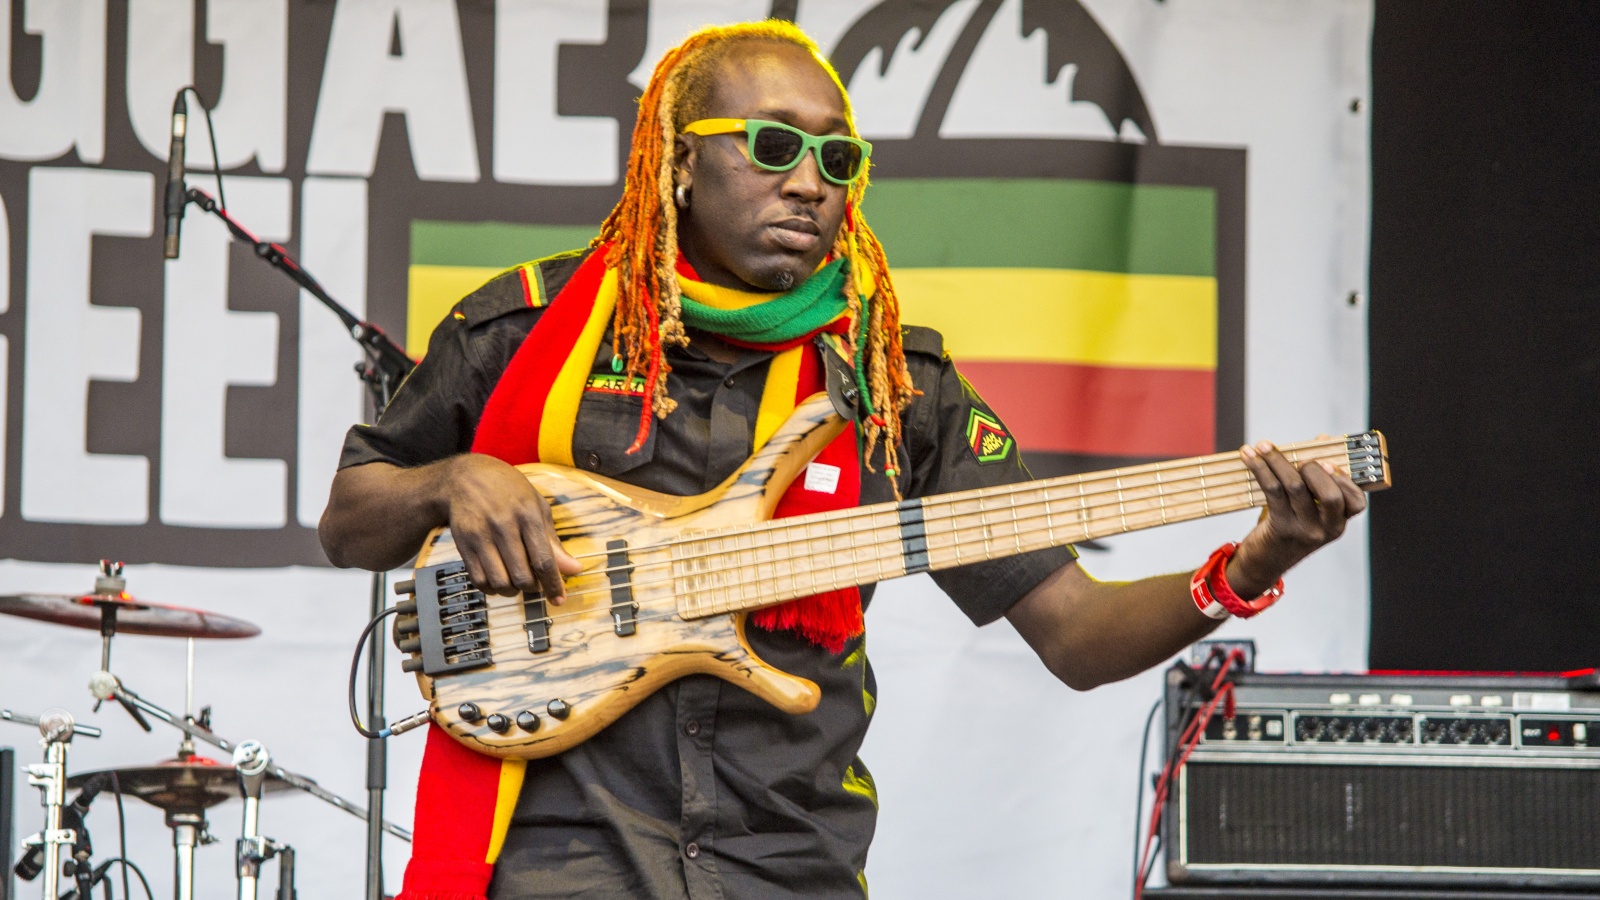 reggae jam